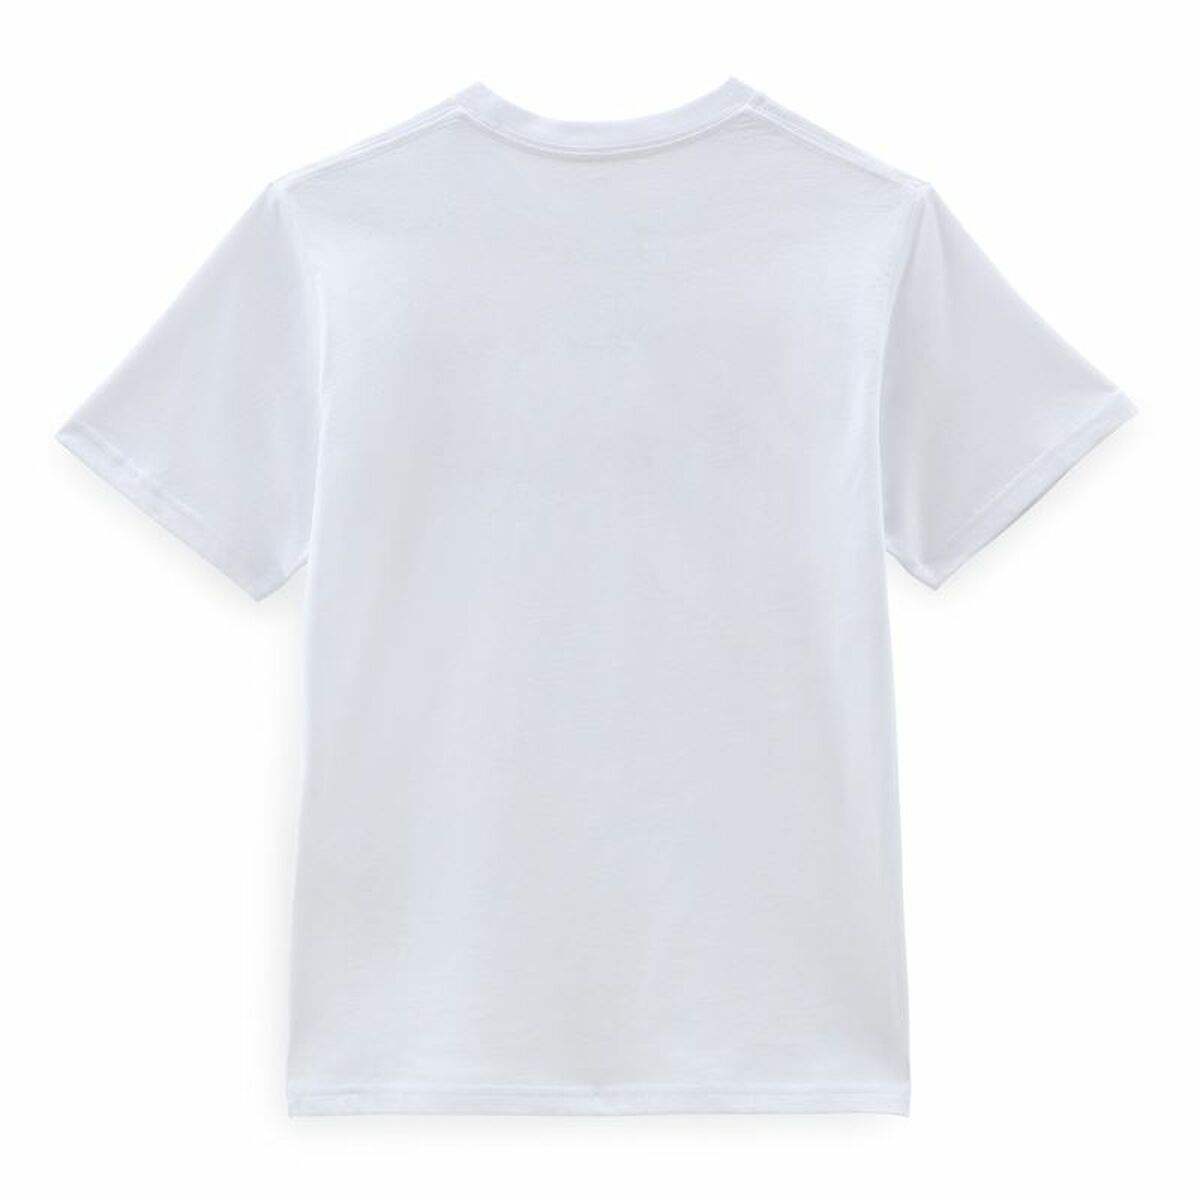 T-shirt à manches courtes enfant Vans Classic Blanc